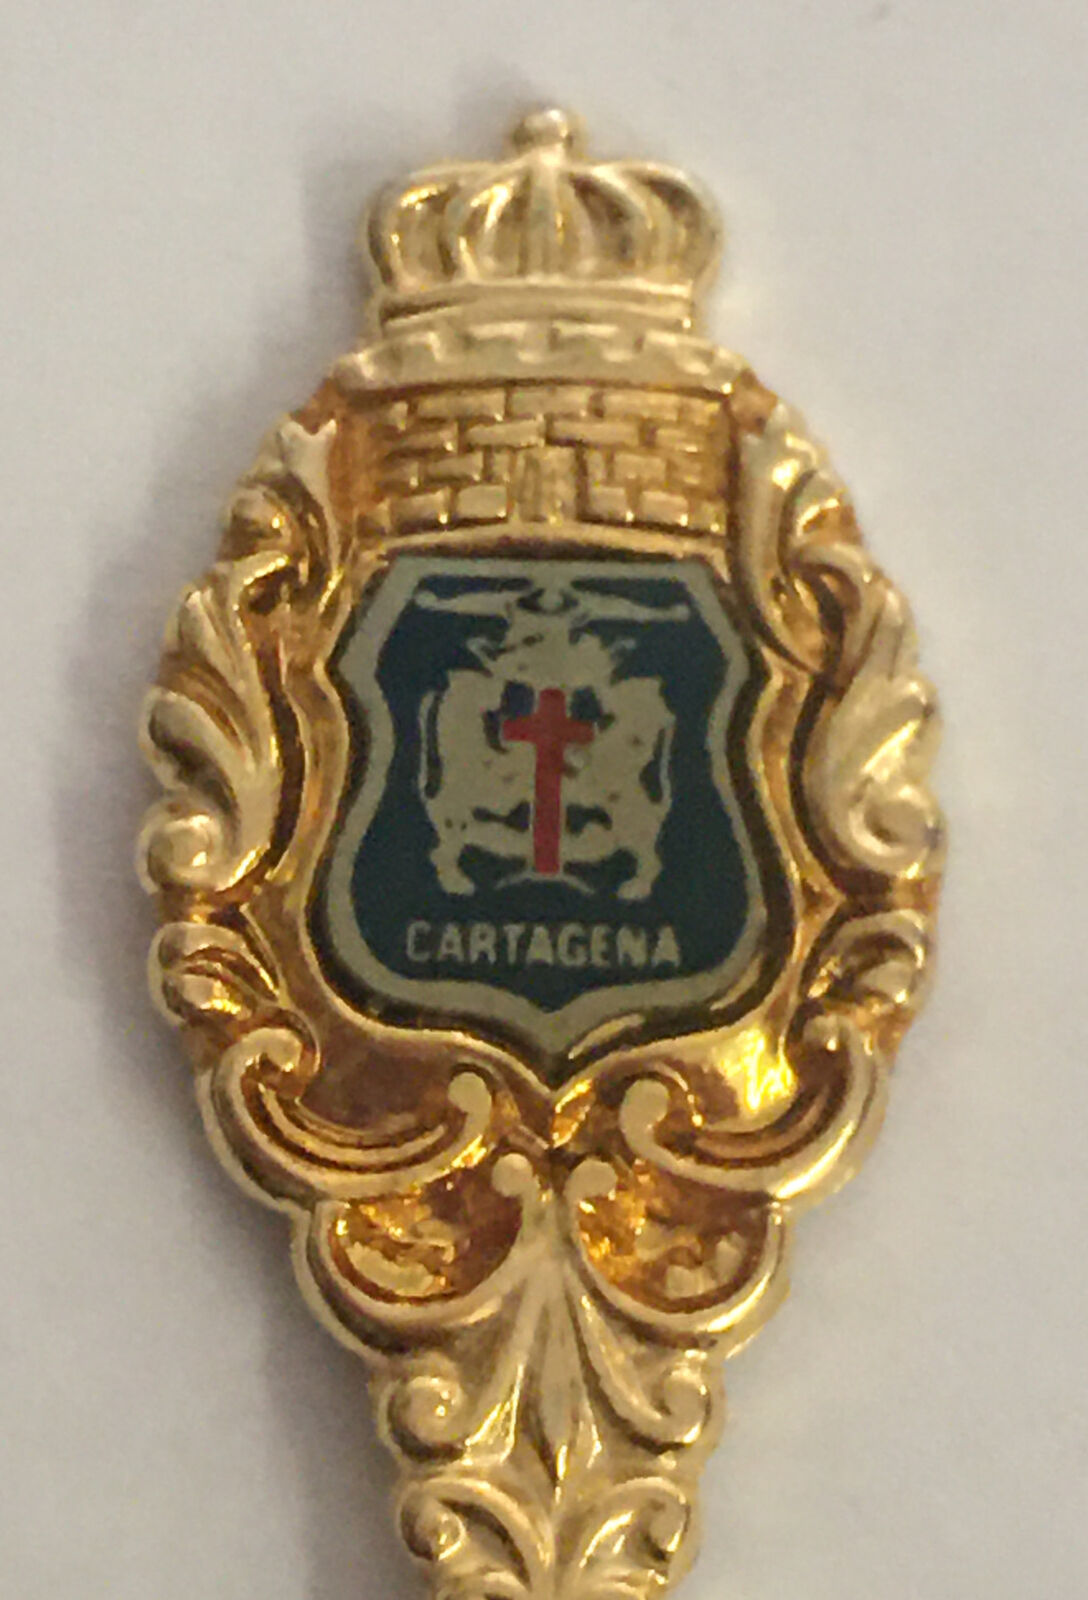 Cartagena Vintage Souvenir Spoon Collectible